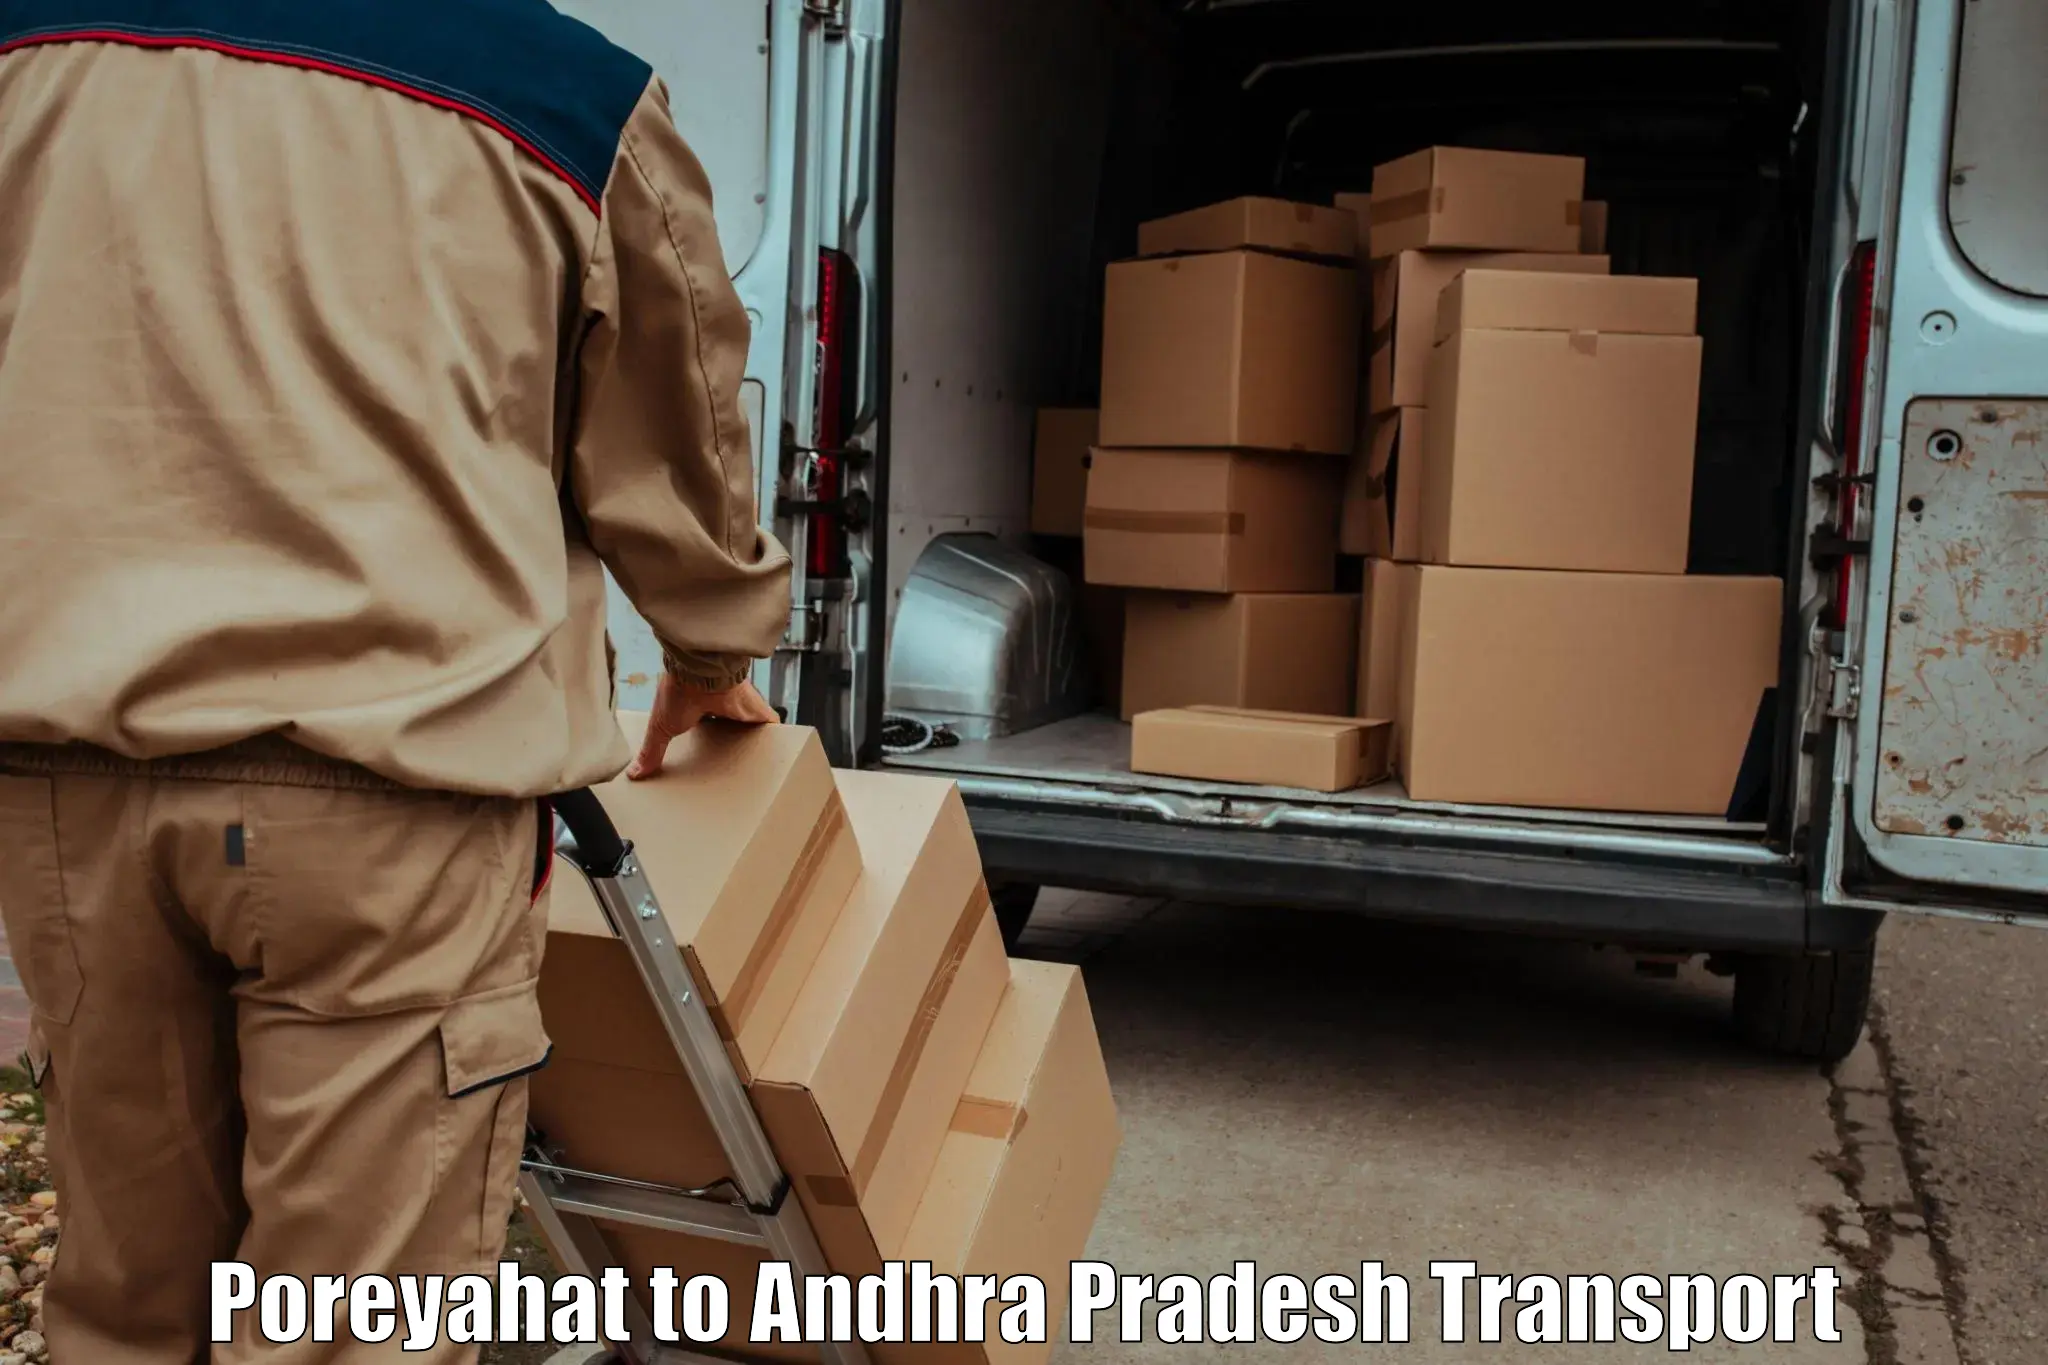 Furniture transport service Poreyahat to NIT Andhra Pradesh